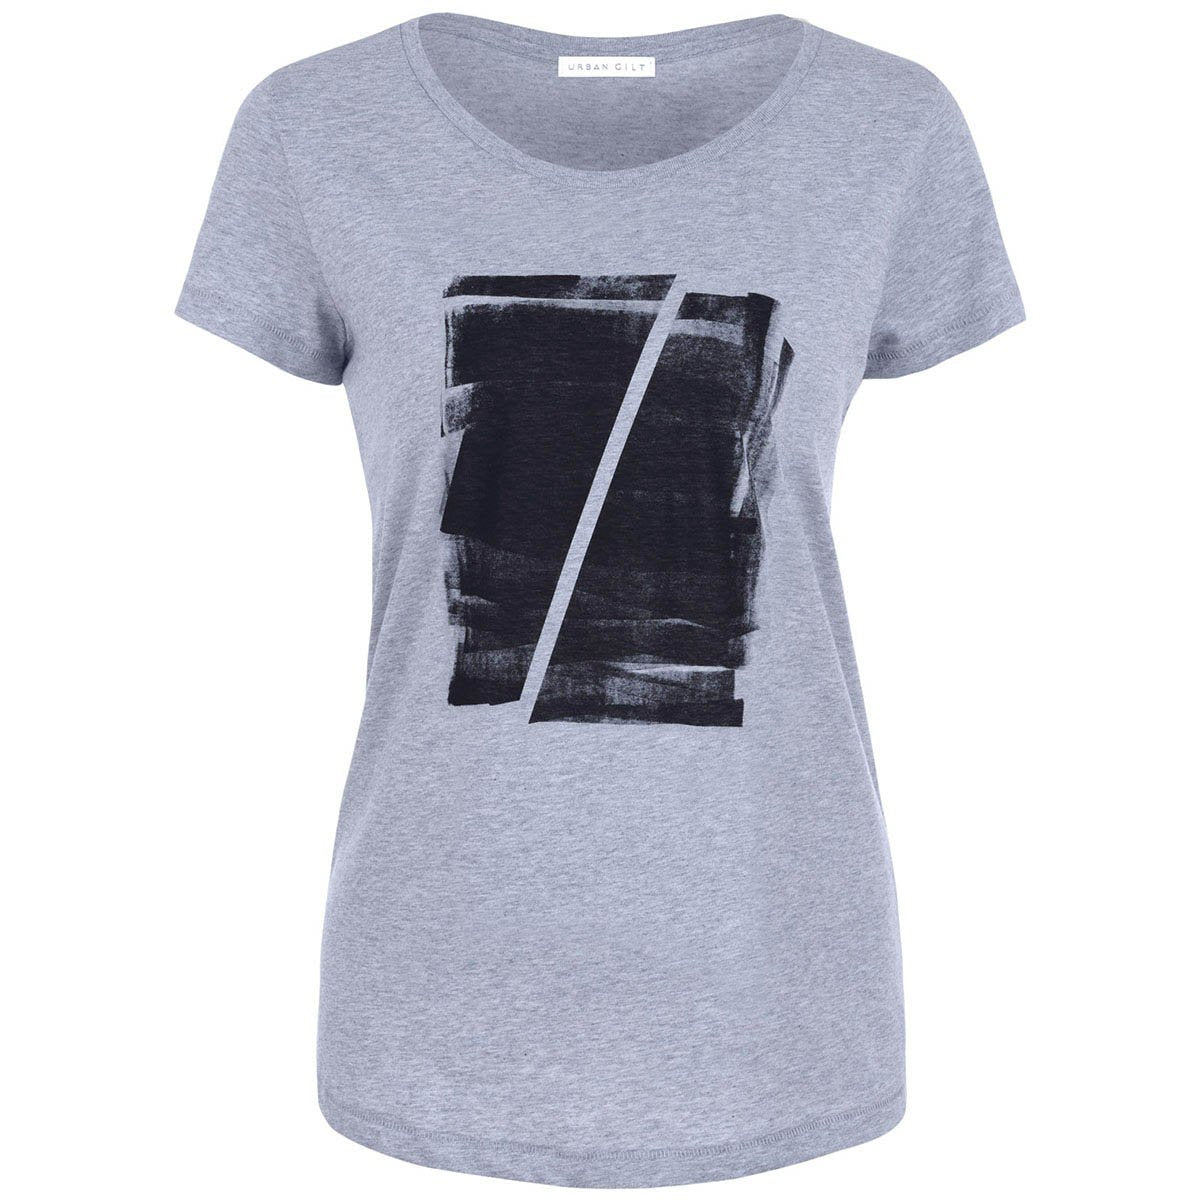 Maddox Grey Abstract Print T-shirt Front View